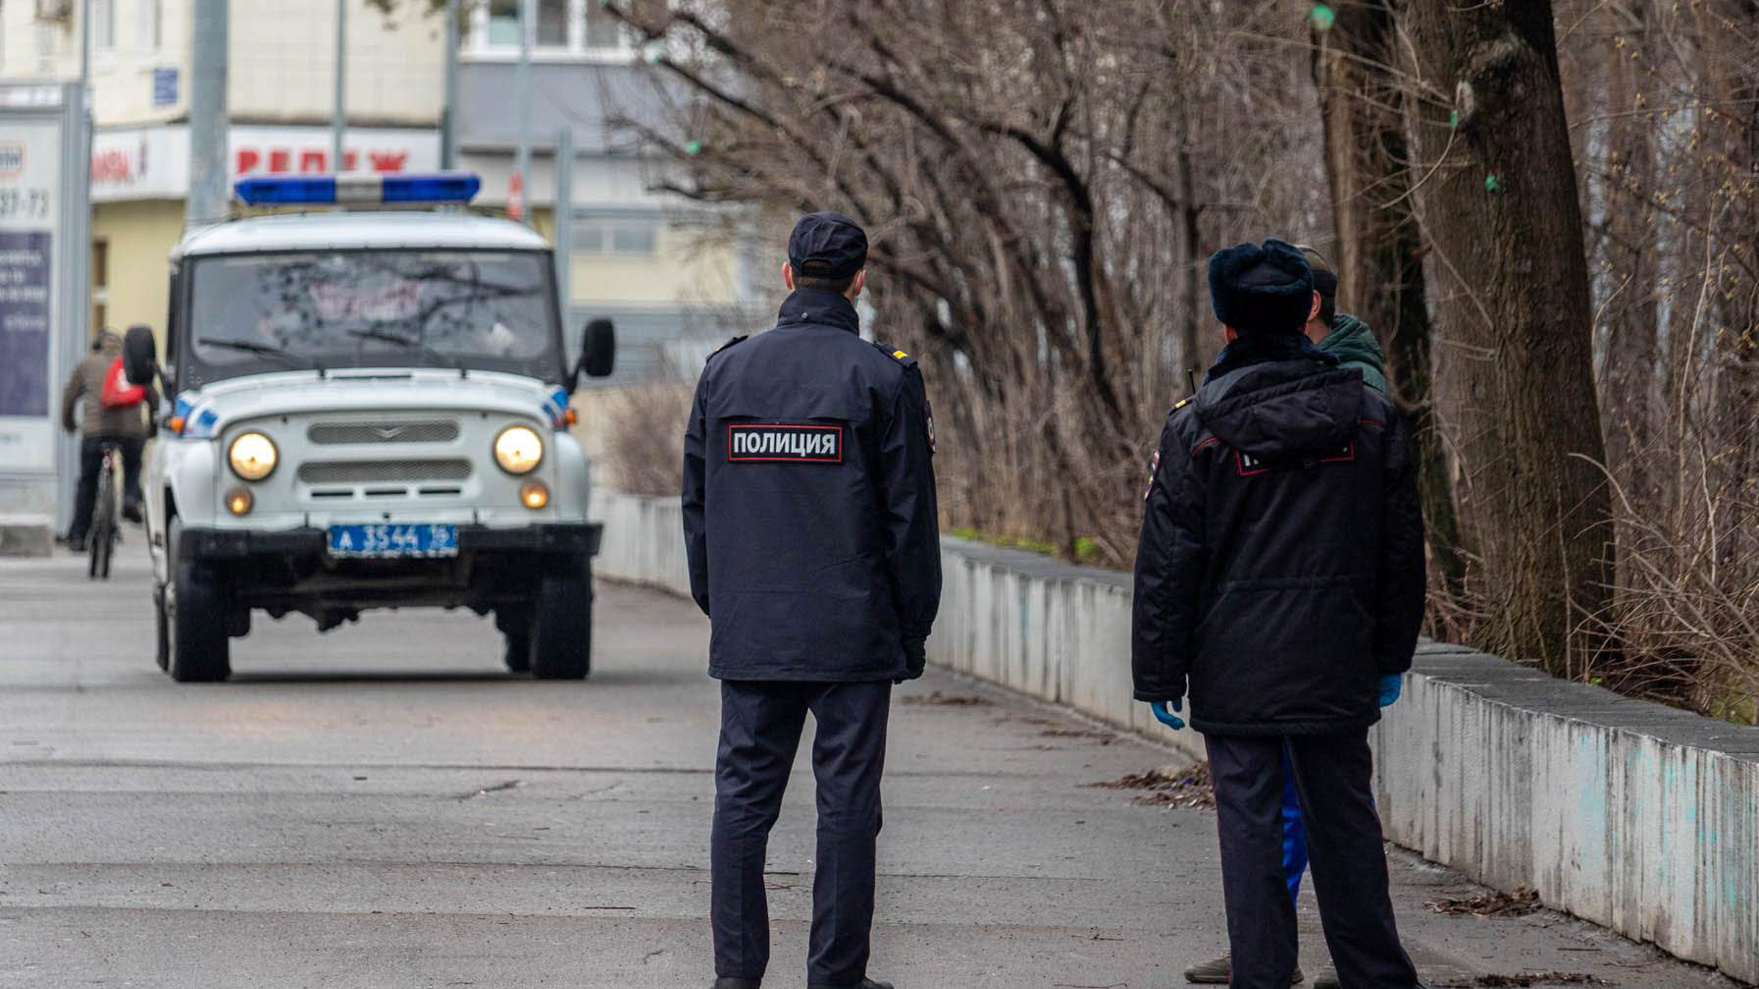 Внимание к приезжим и молодым: на подъездах казанских домов появились странные памятки от полиции